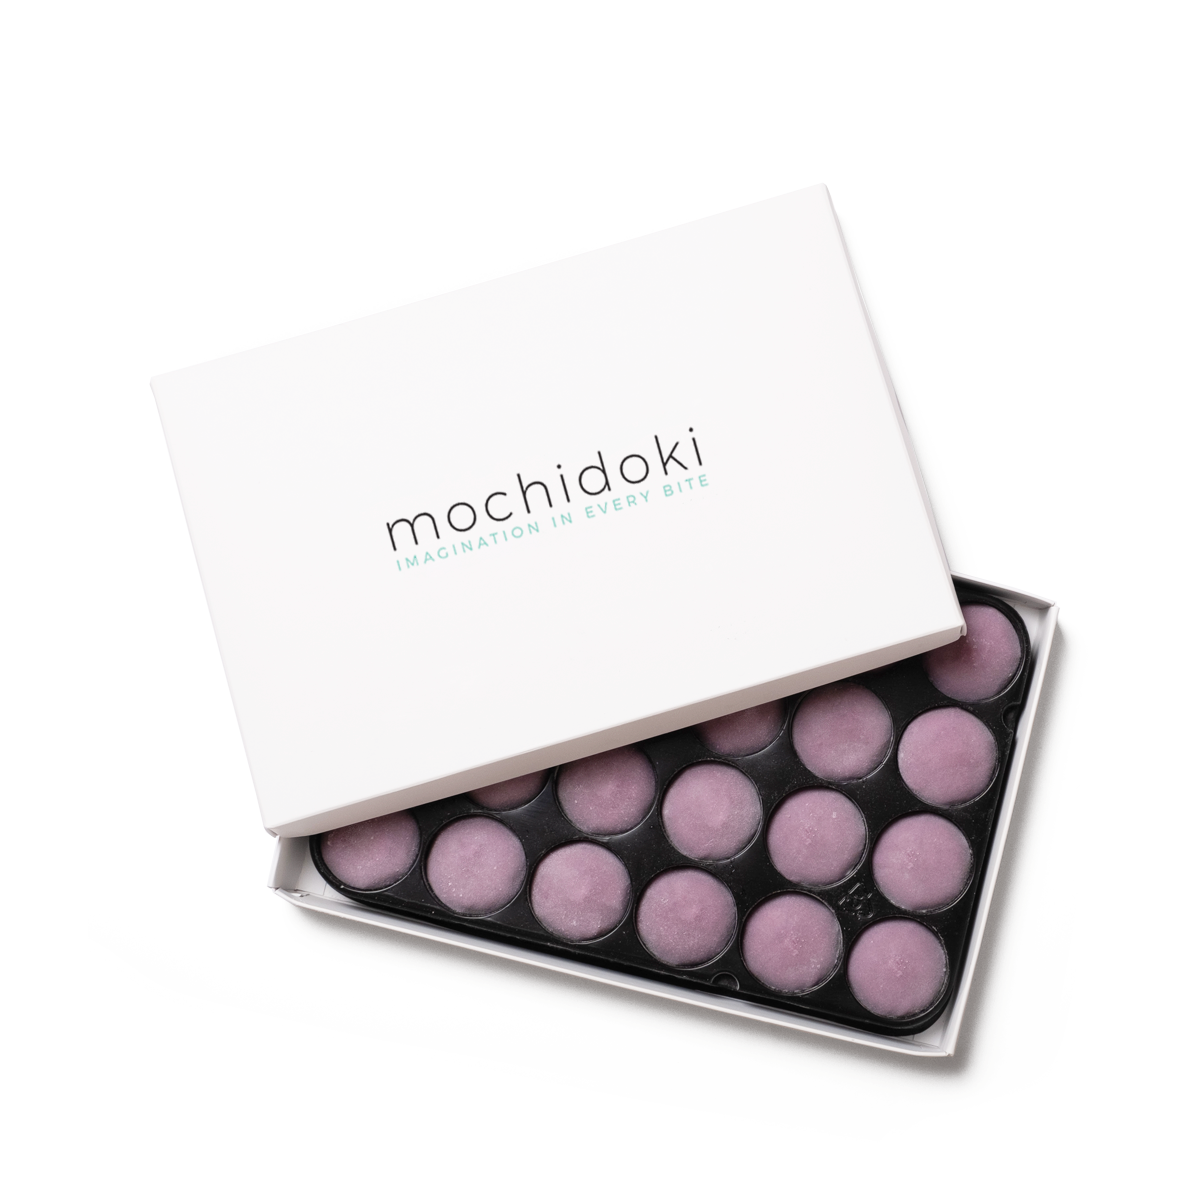 Mochidoki x Umamicart's Mochi Sundae Kit Is the ~Coolest~ Way to